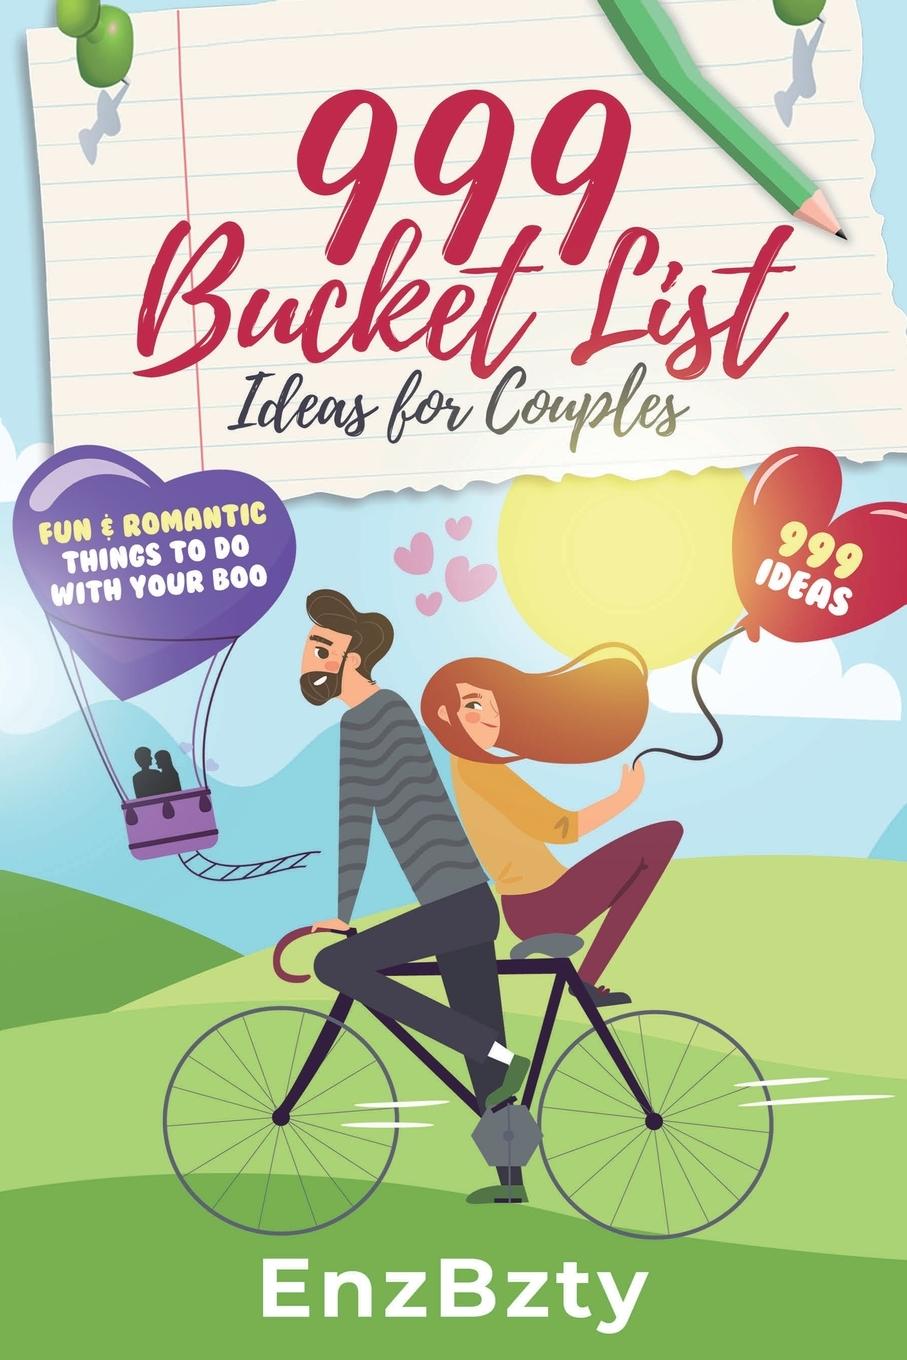 Kniha 999 Bucket List Ideas for Couples 